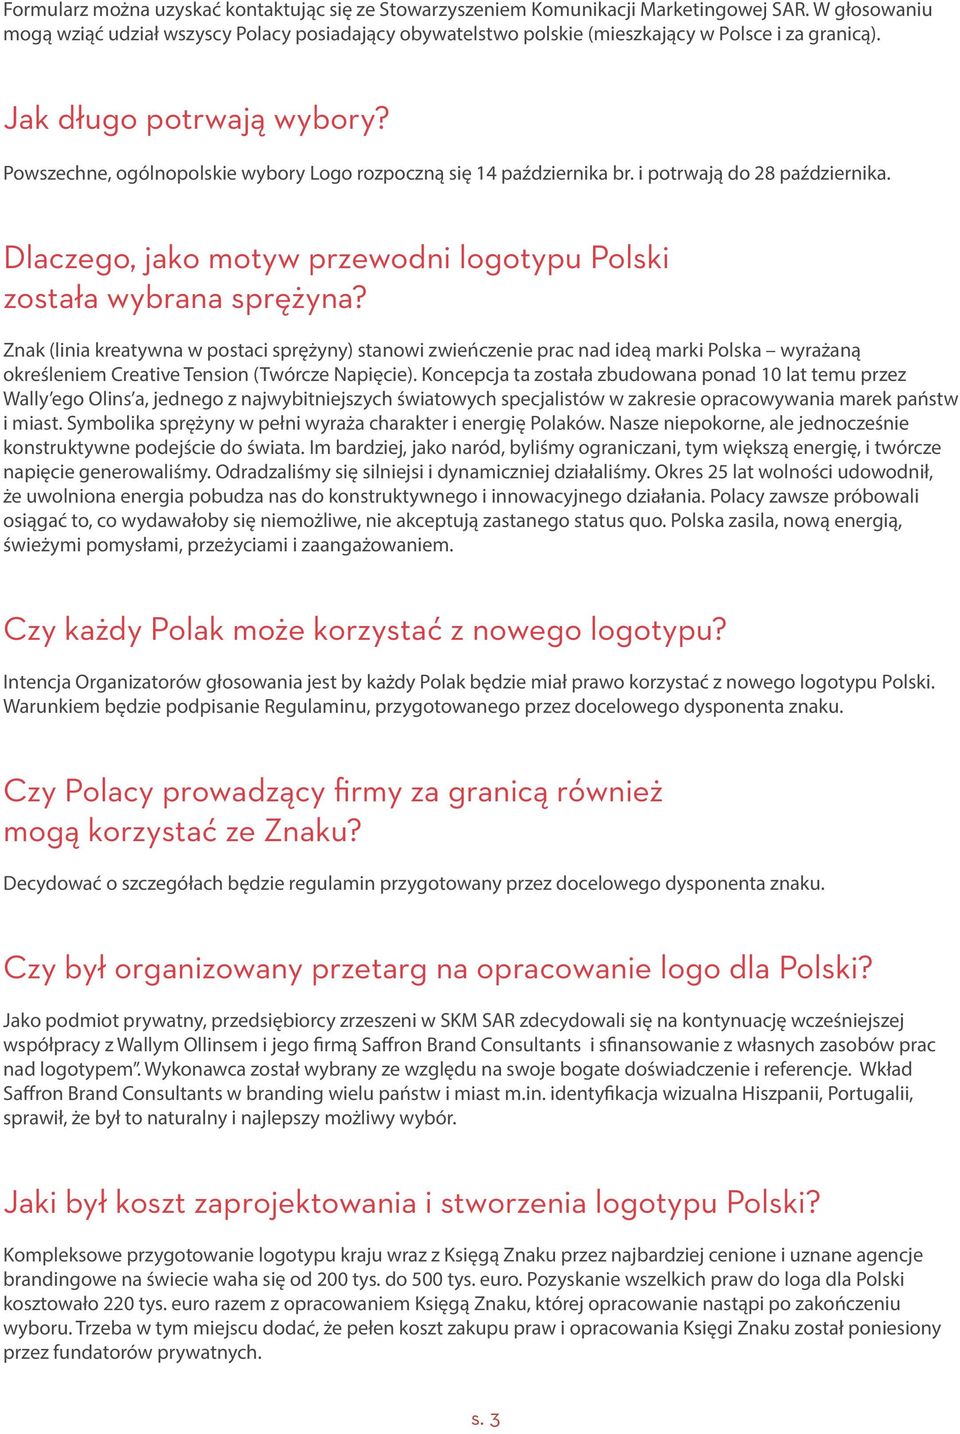 Powszechne, ogólnopolskie wybory Logo rozpoczną się 14 października br. i potrwają do 28 października. Dlaczego, jako motyw przewodni logotypu Polski została wybrana sprężyna?